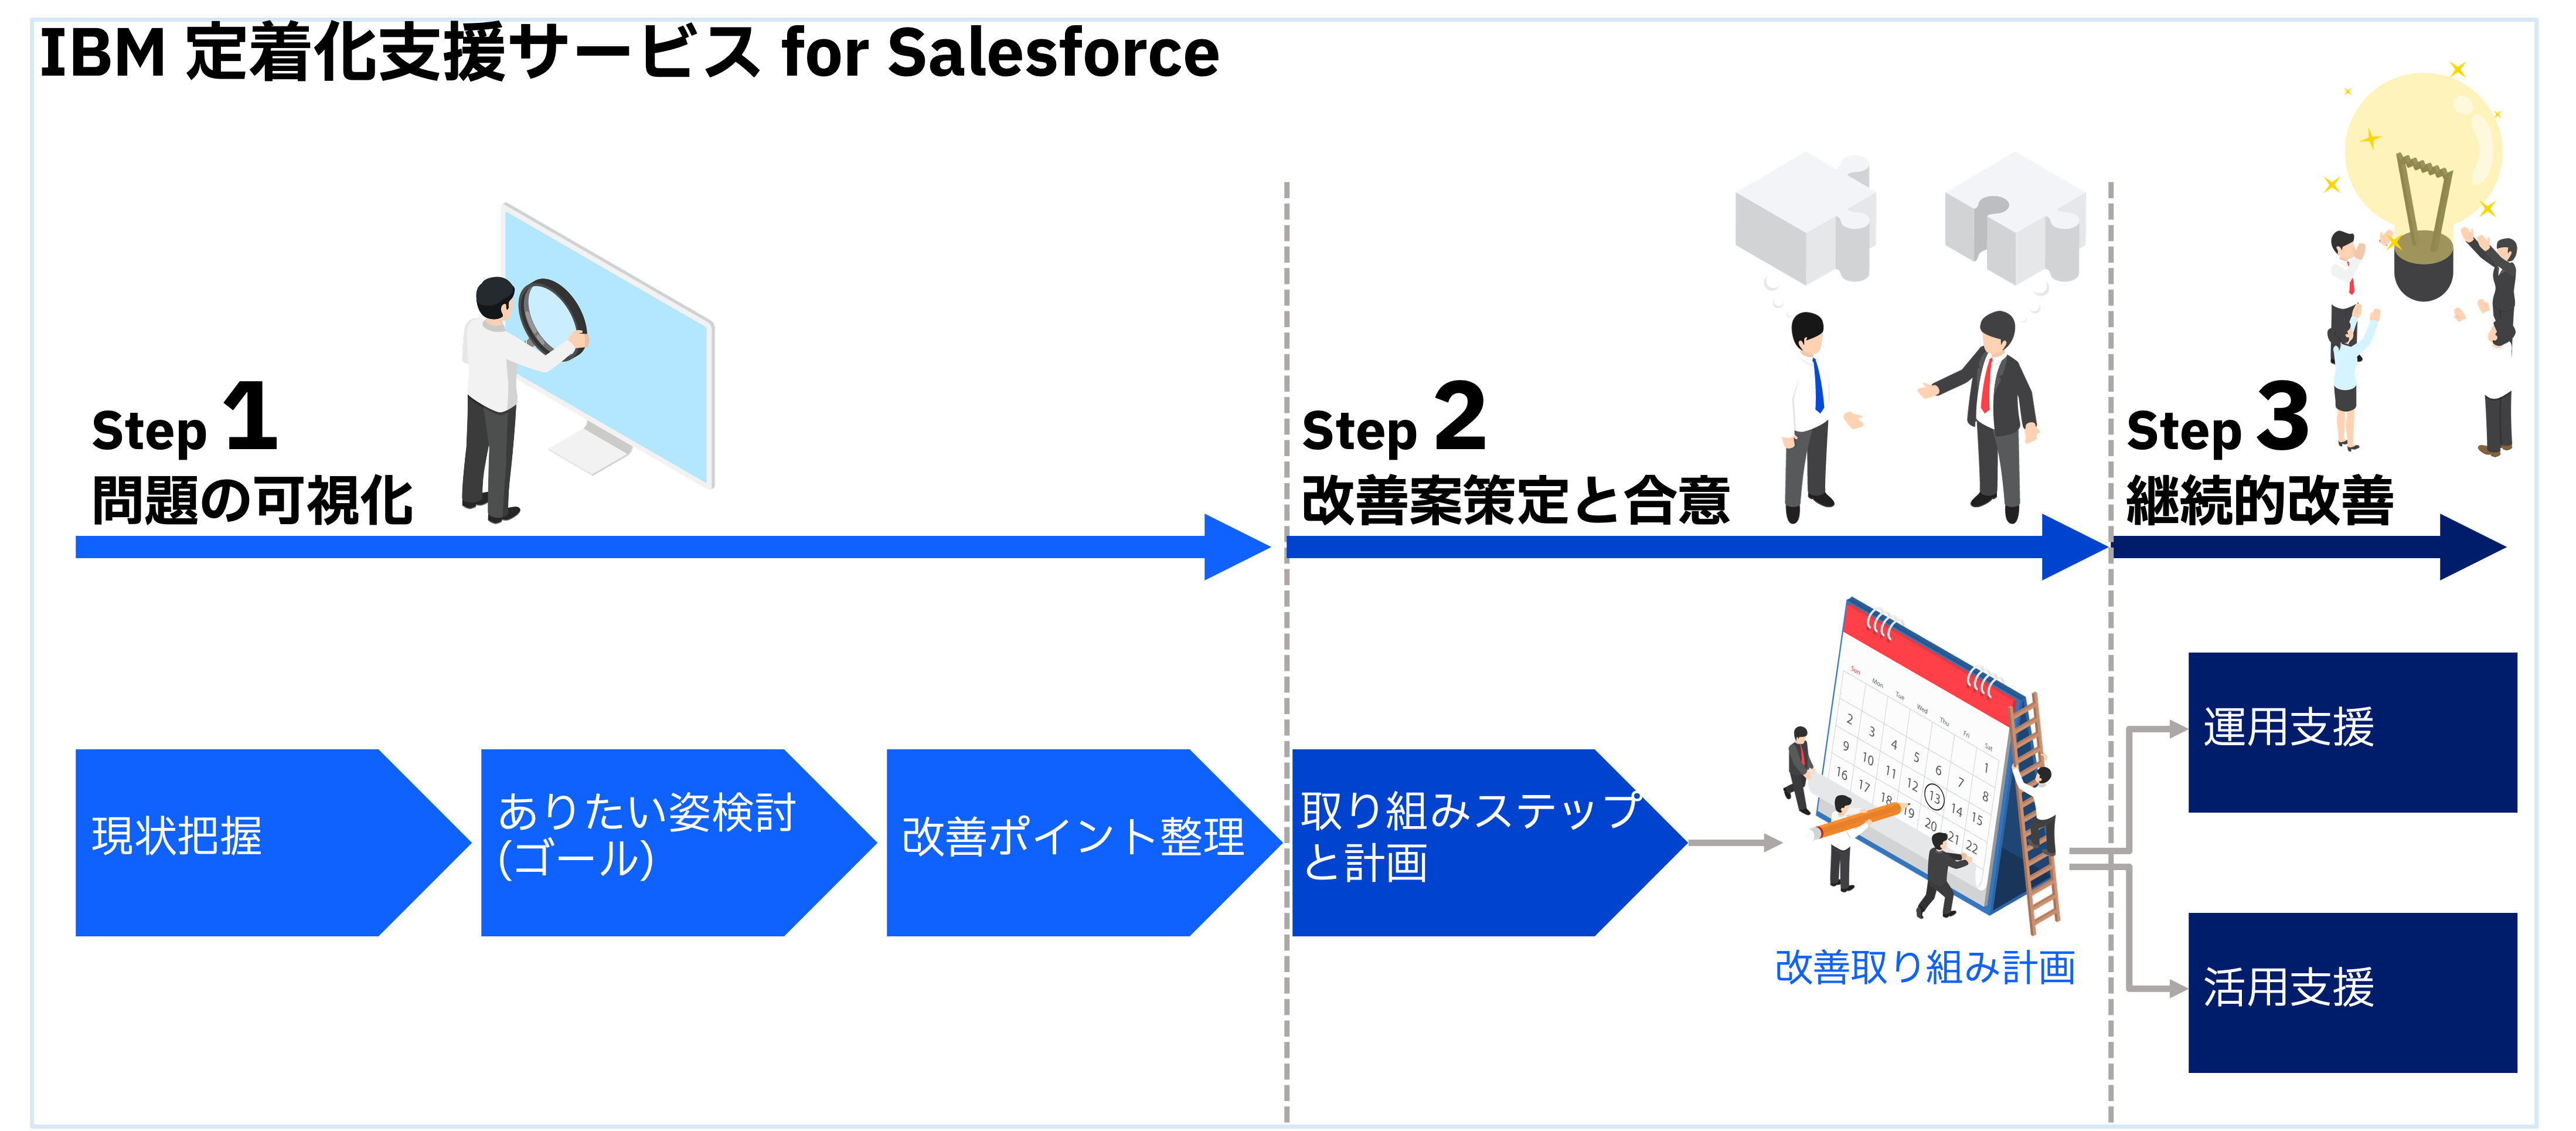 Salesforce deployment